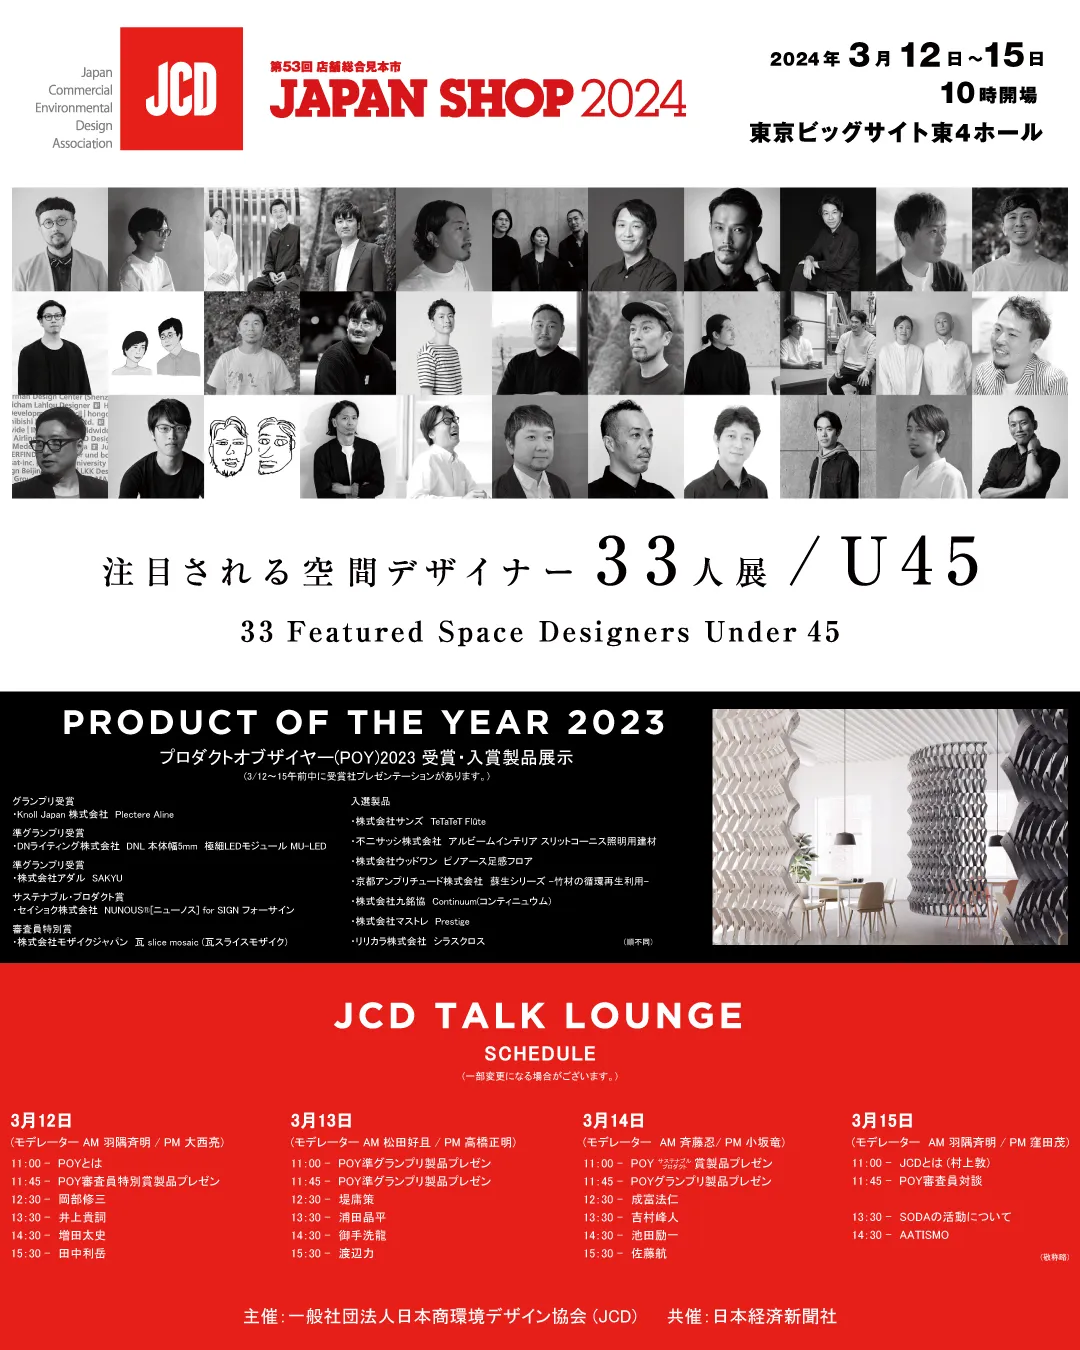 3/12(火)から開催される「JAPAN SHOP 2024」のJCDブース「注目される空間デザイナー33人展/U45」で当社社員が選ばれました